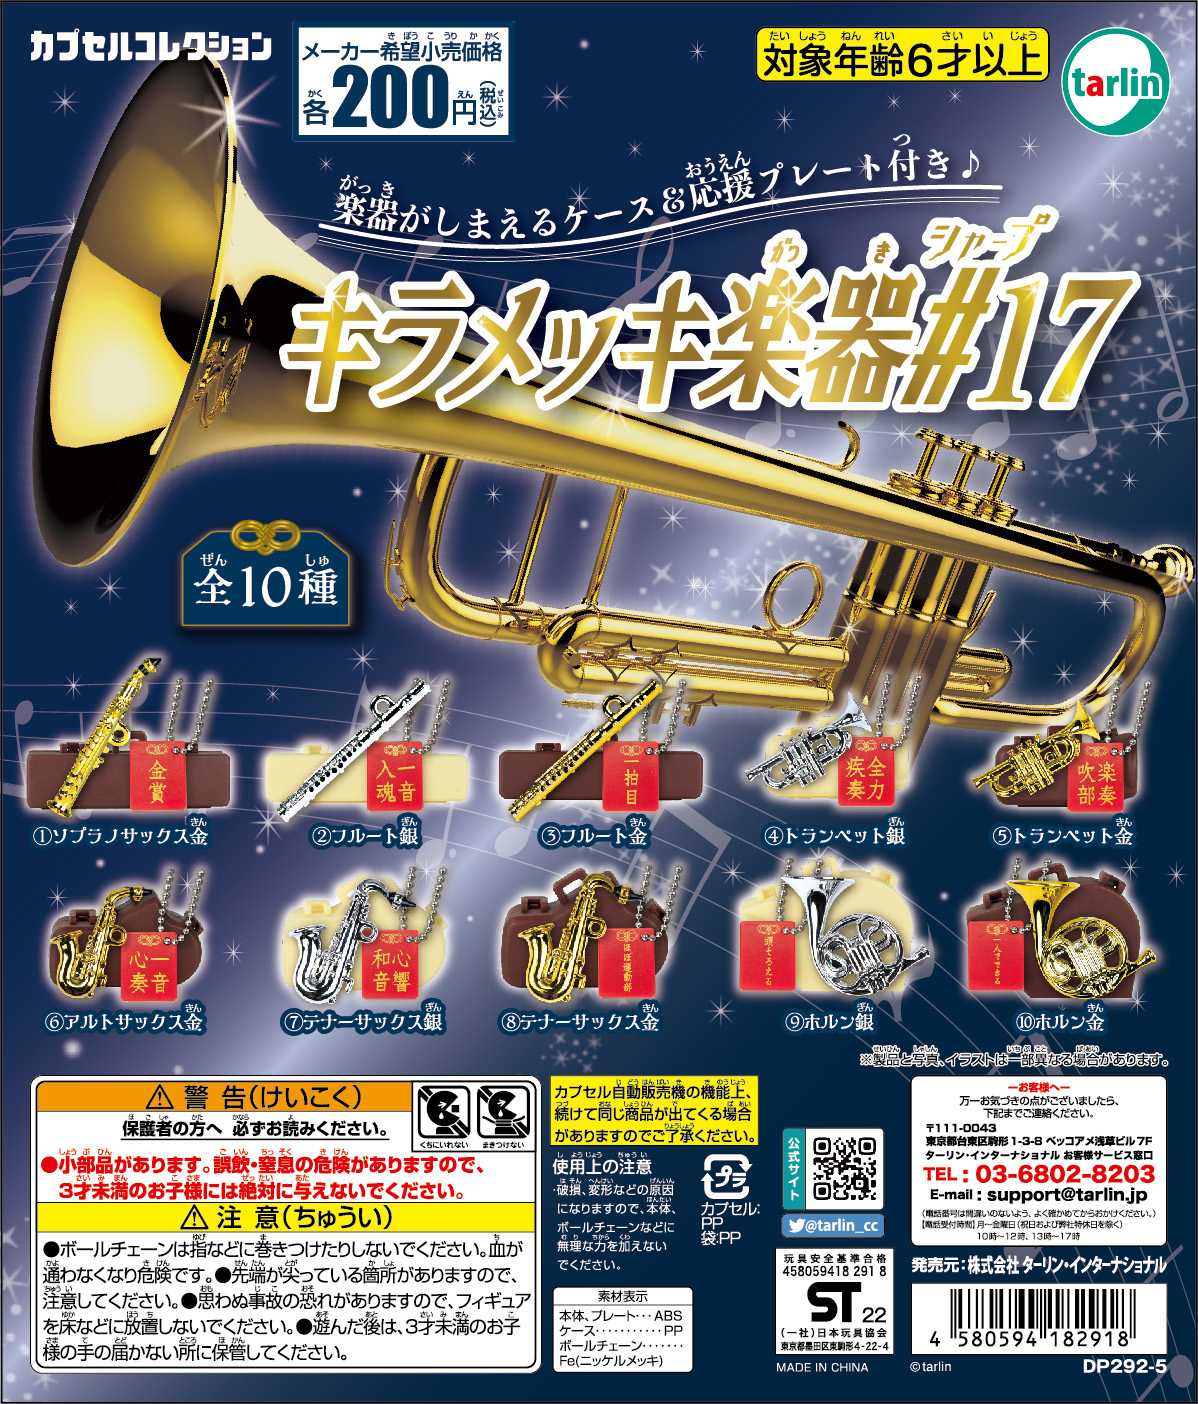 きらめく管楽器がミニチュアサイズで登場 キラメッキ楽器 17 が8月15日に発売 Hobby Watch